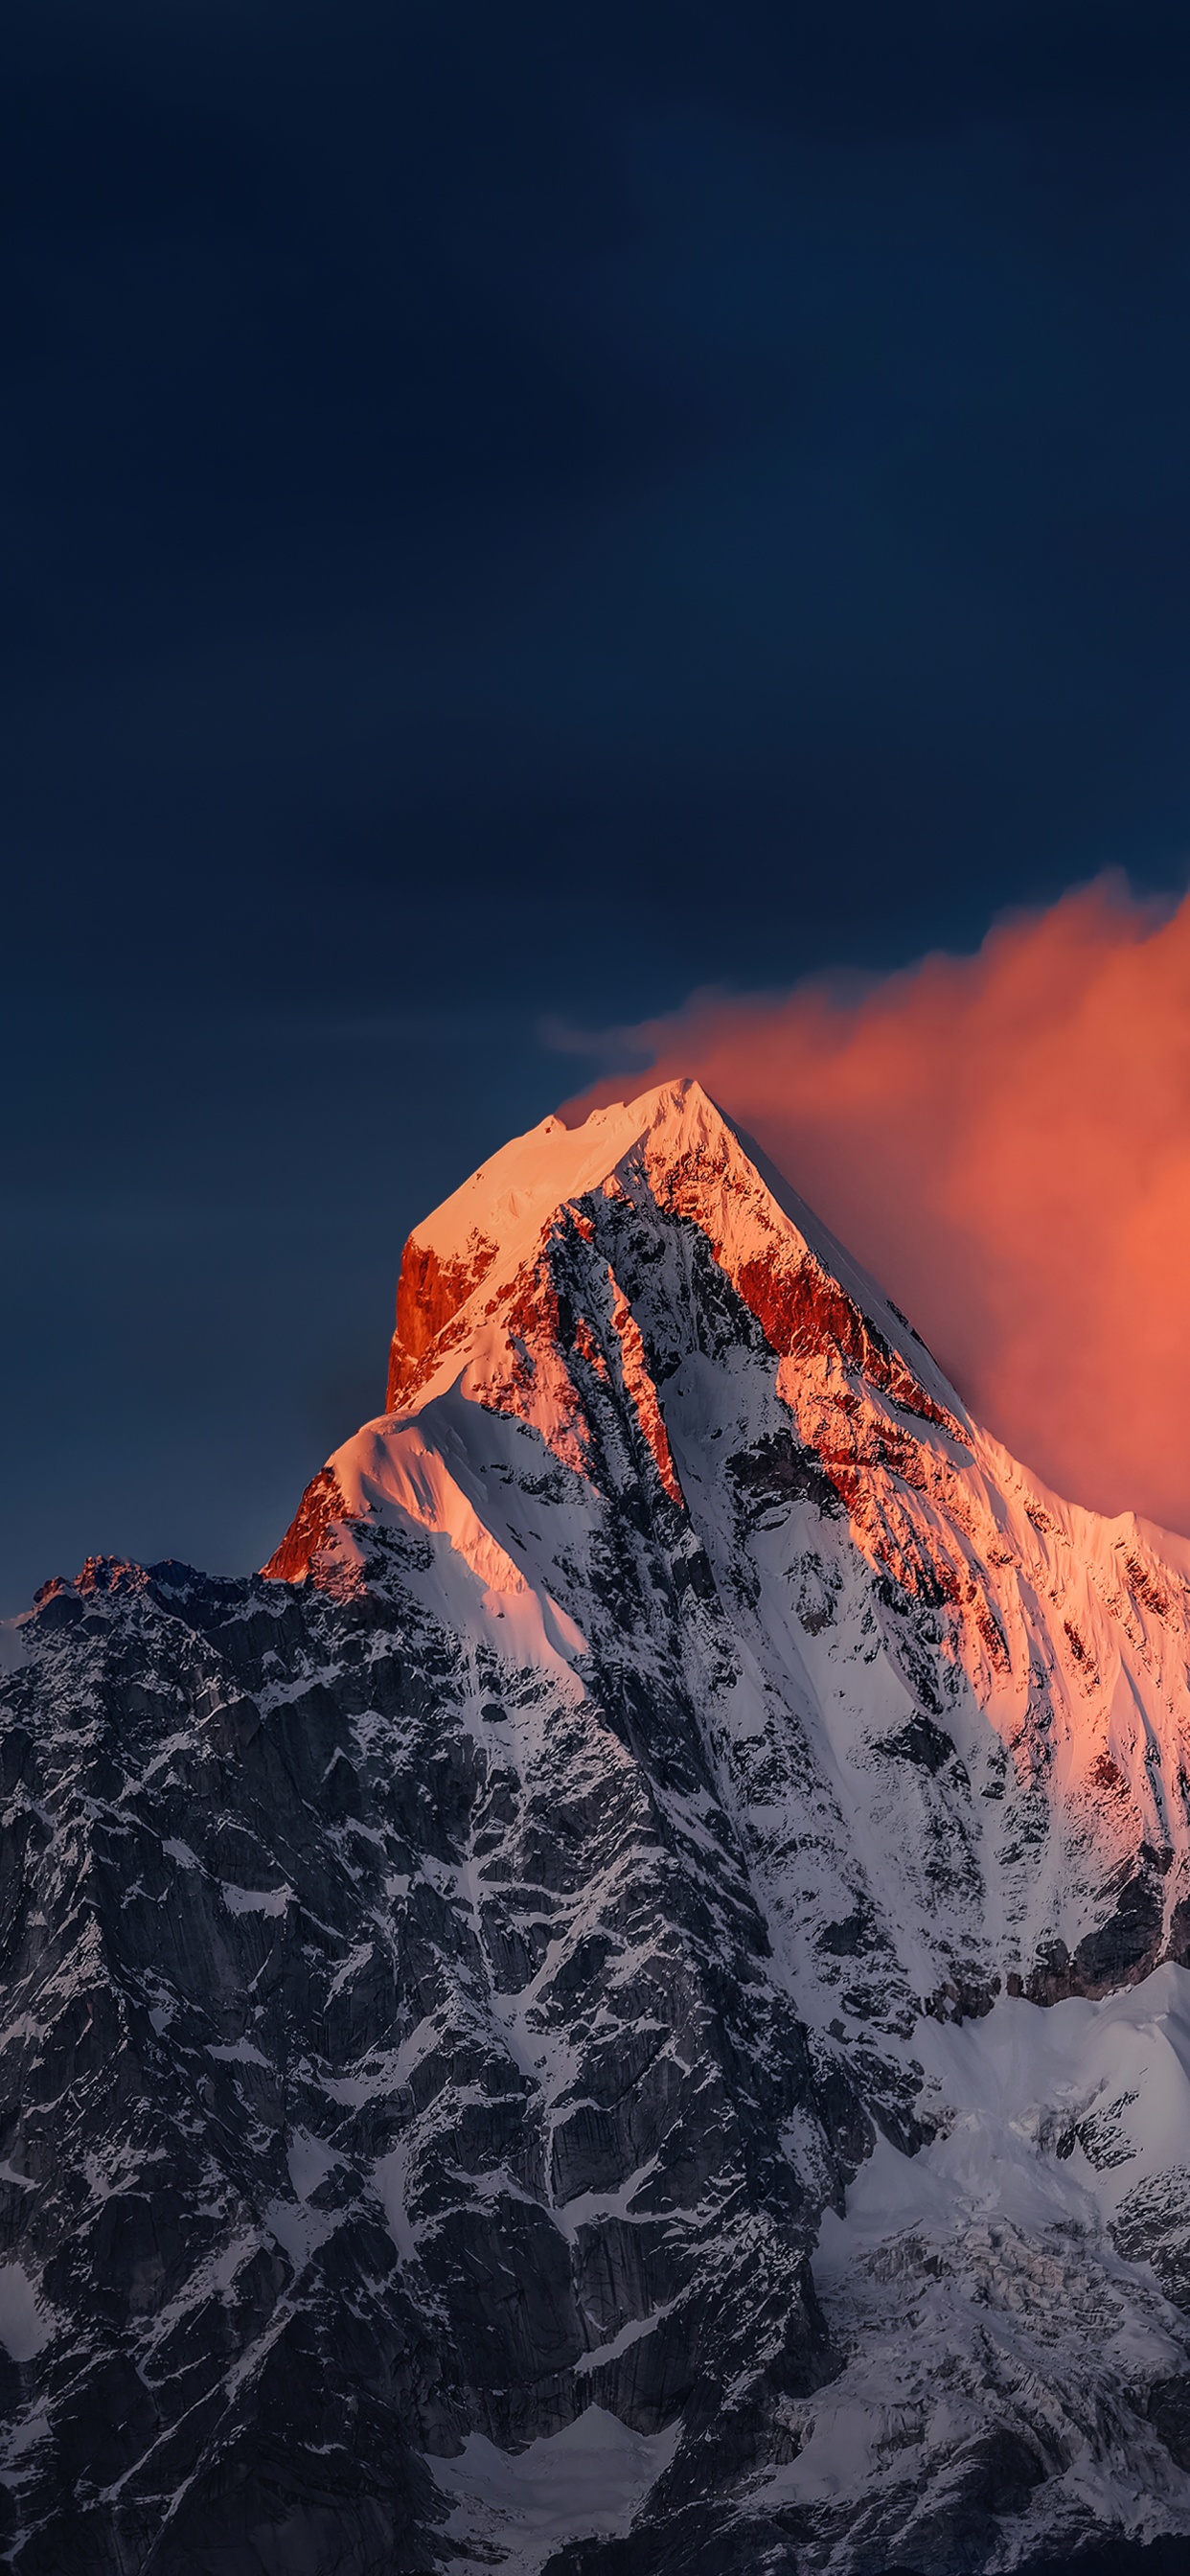 Mount Siguniang - Nếu bạn là một tín đồ phượt, đi du lịch, người muốn khám phá thiên nhiên hùng vĩ, thì hãy xem bức ảnh về núi Siguniang này. Toàn cảnh đầy ma mị và kỳ vĩ nơi mà bạn không thể bỏ lỡ.